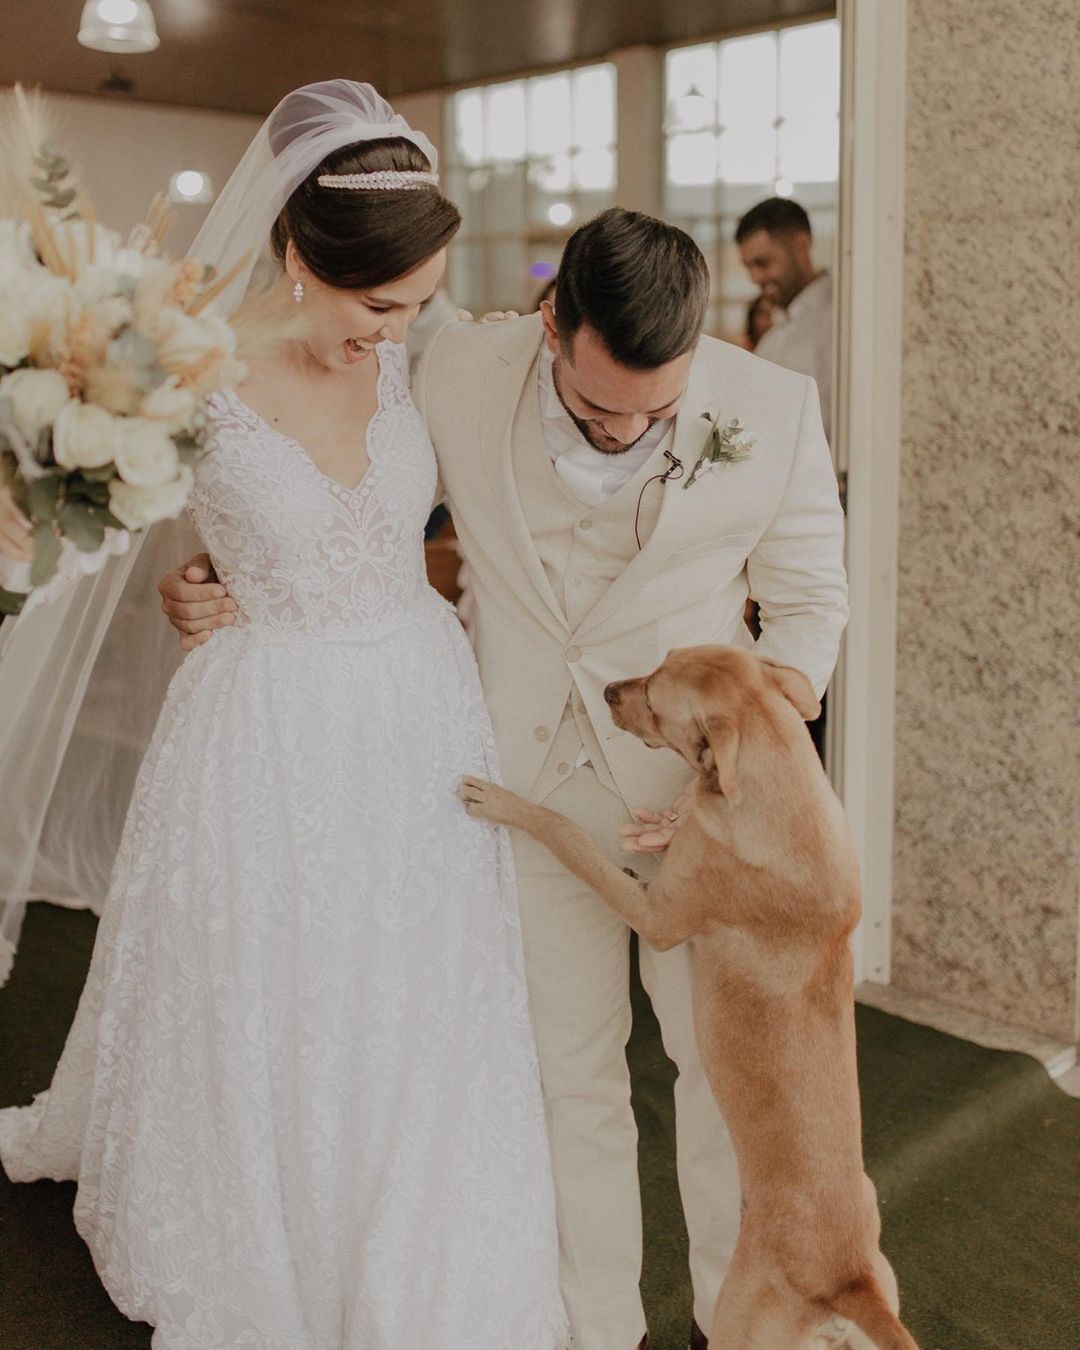 Stray Dog greeting newlyweds